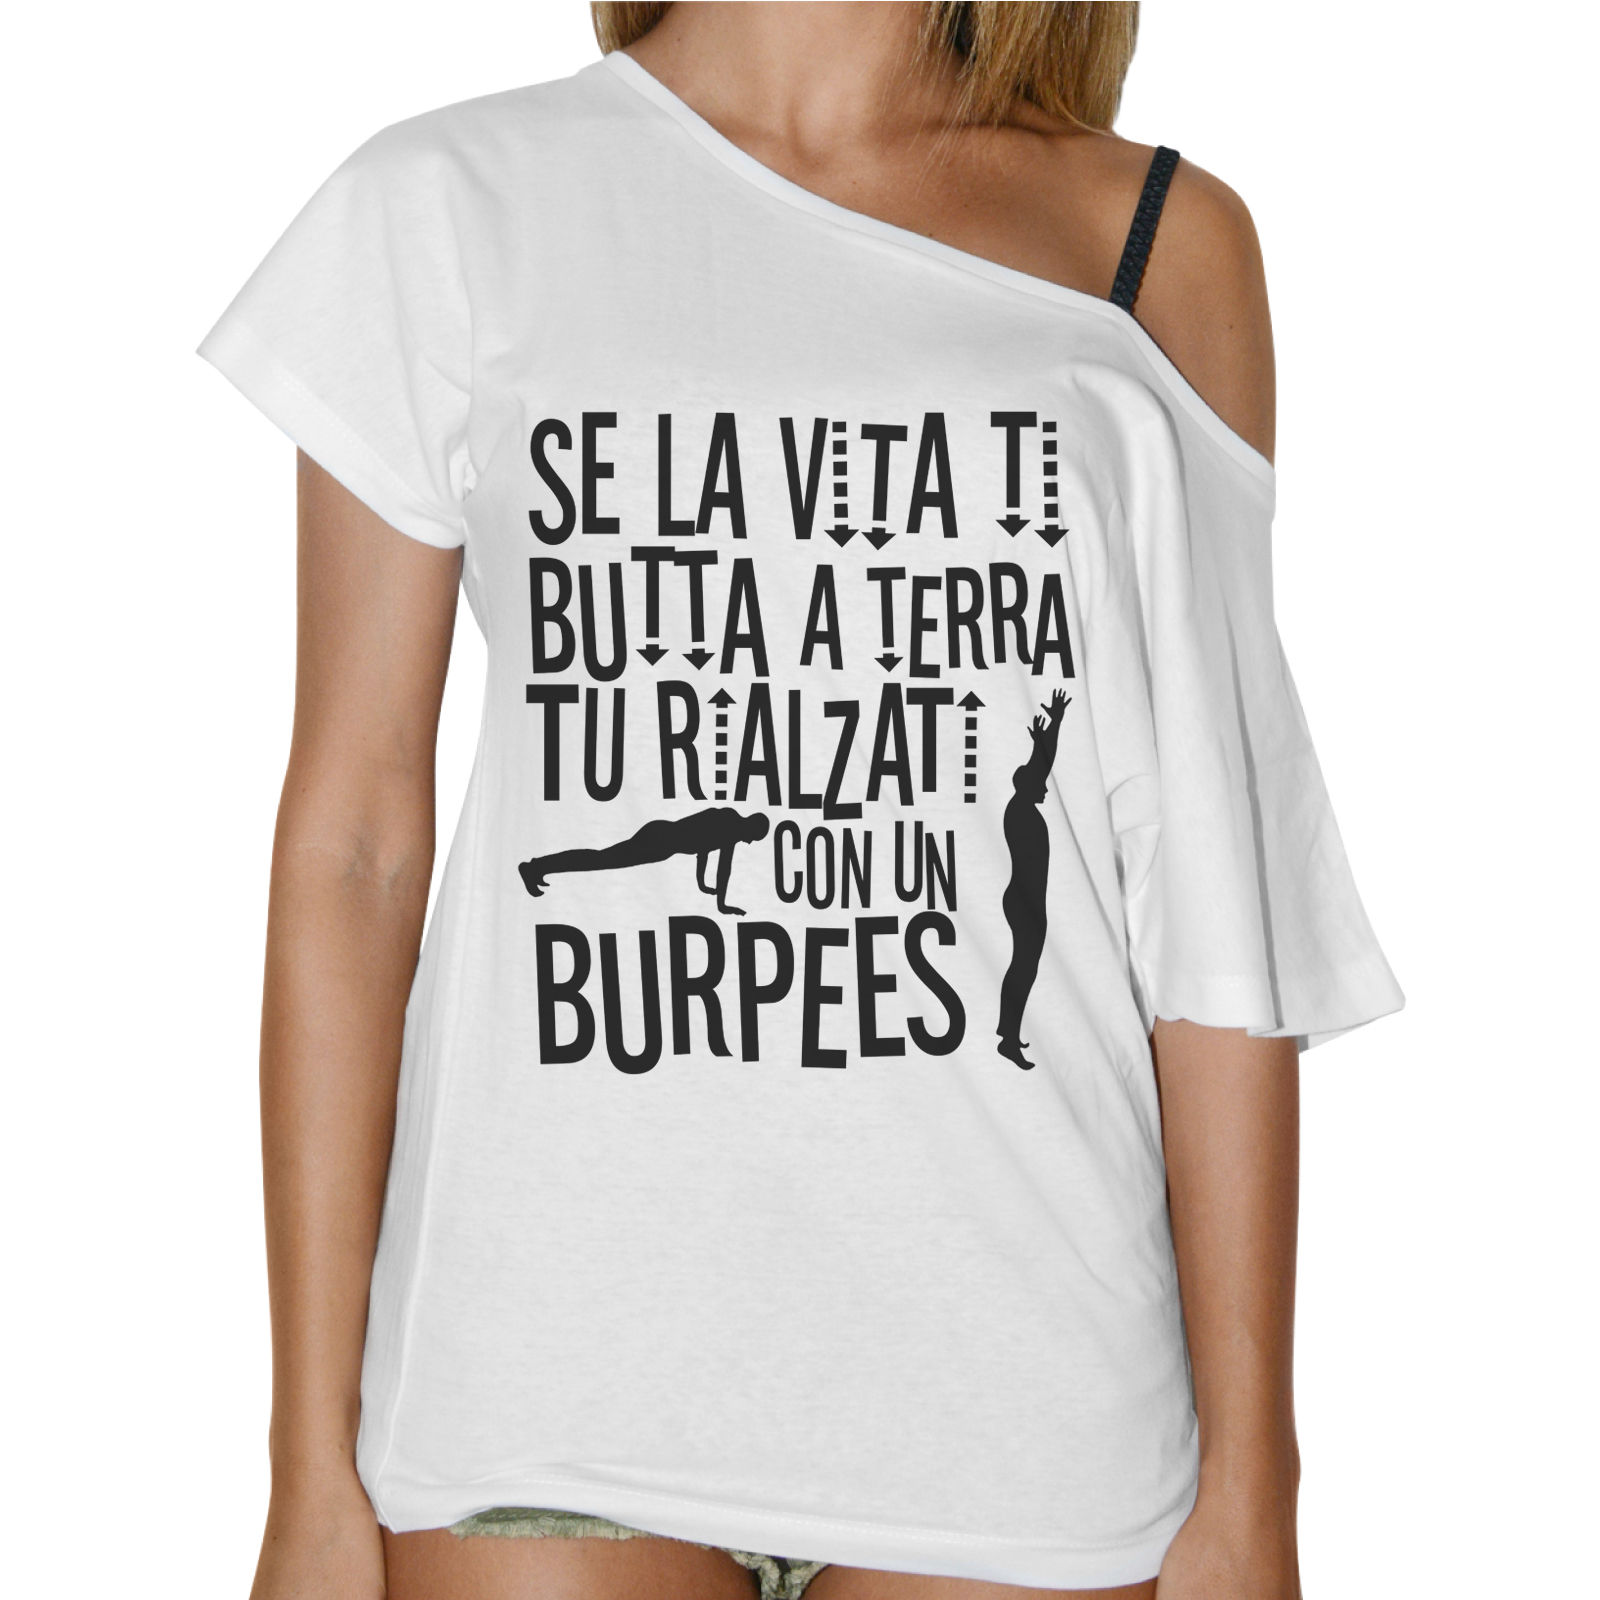 T-Shirt Donna Collo Barca RIALZATI CON UN BURPEES